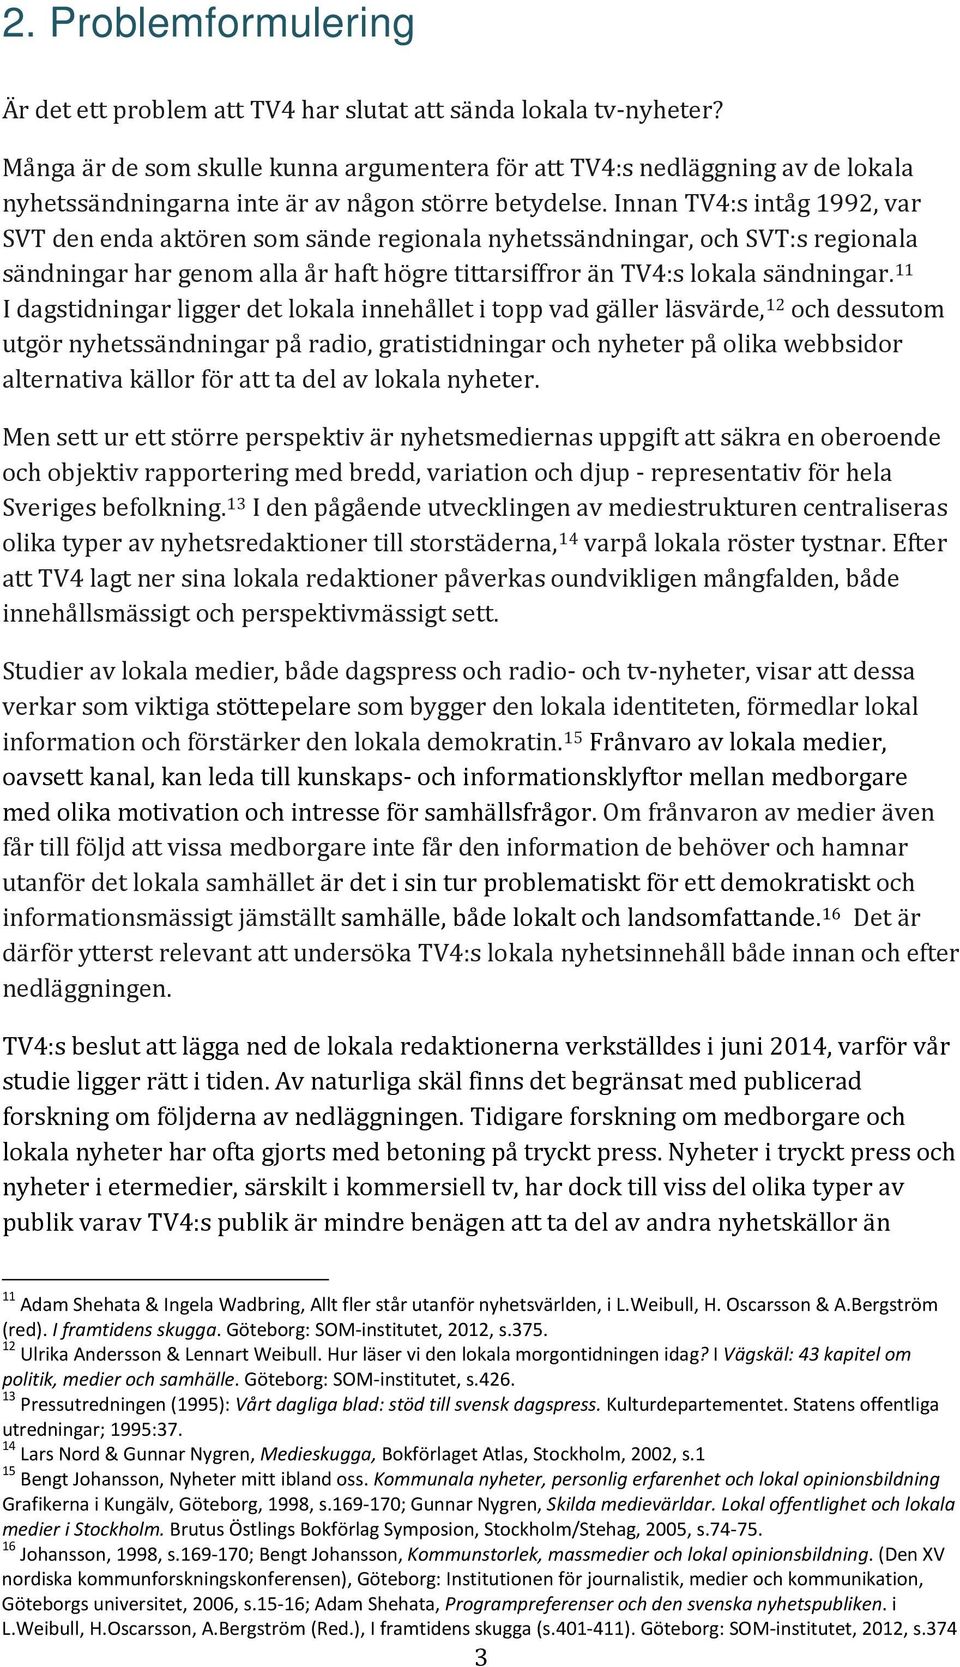 Innan TV4:s intåg 1992, var SVT den enda aktören som sände regionala nyhetssändningar, och SVT:s regionala sändningar har genom alla år haft högre tittarsiffror än TV4:s lokala sändningar.